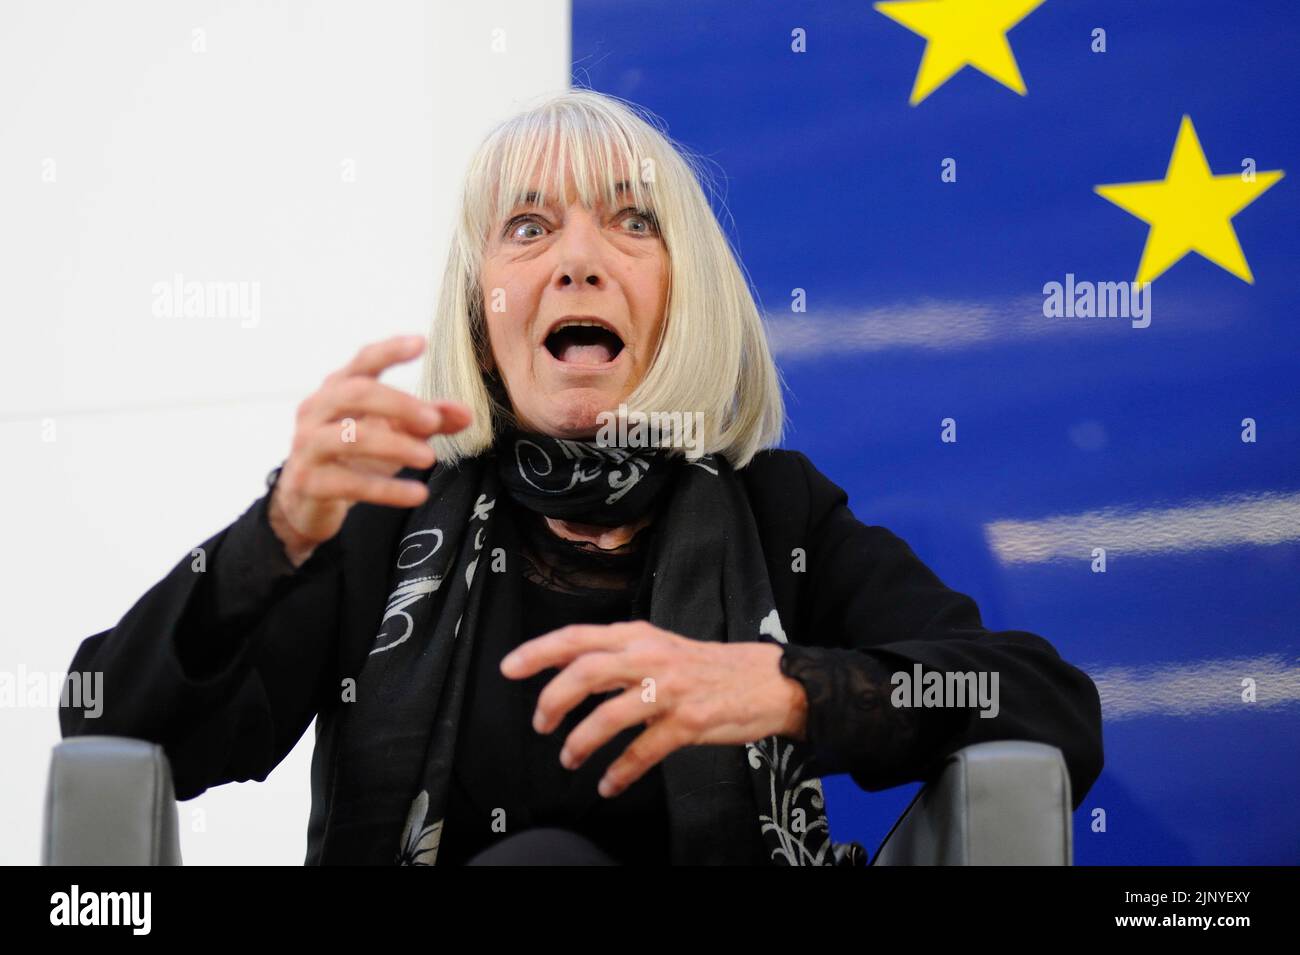 Viena, Austria. 14 de abril de 2015. La actriz austriaca Erika Pluhar en la Casa de la Unión Europea Foto de stock